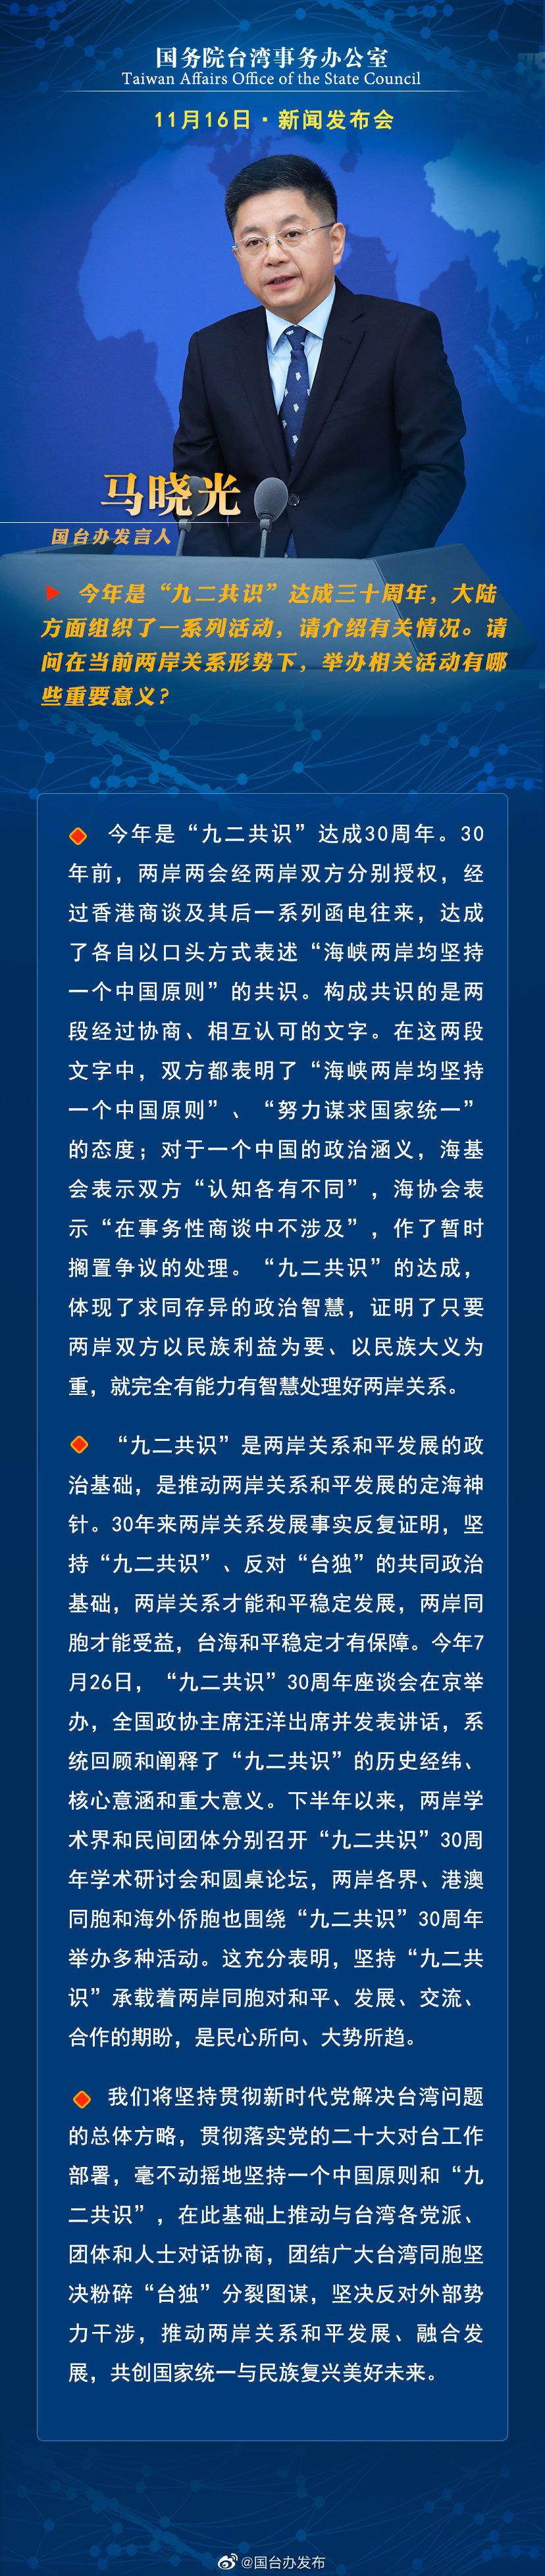 國務院台灣事務辦公室11月16日·新聞發佈會